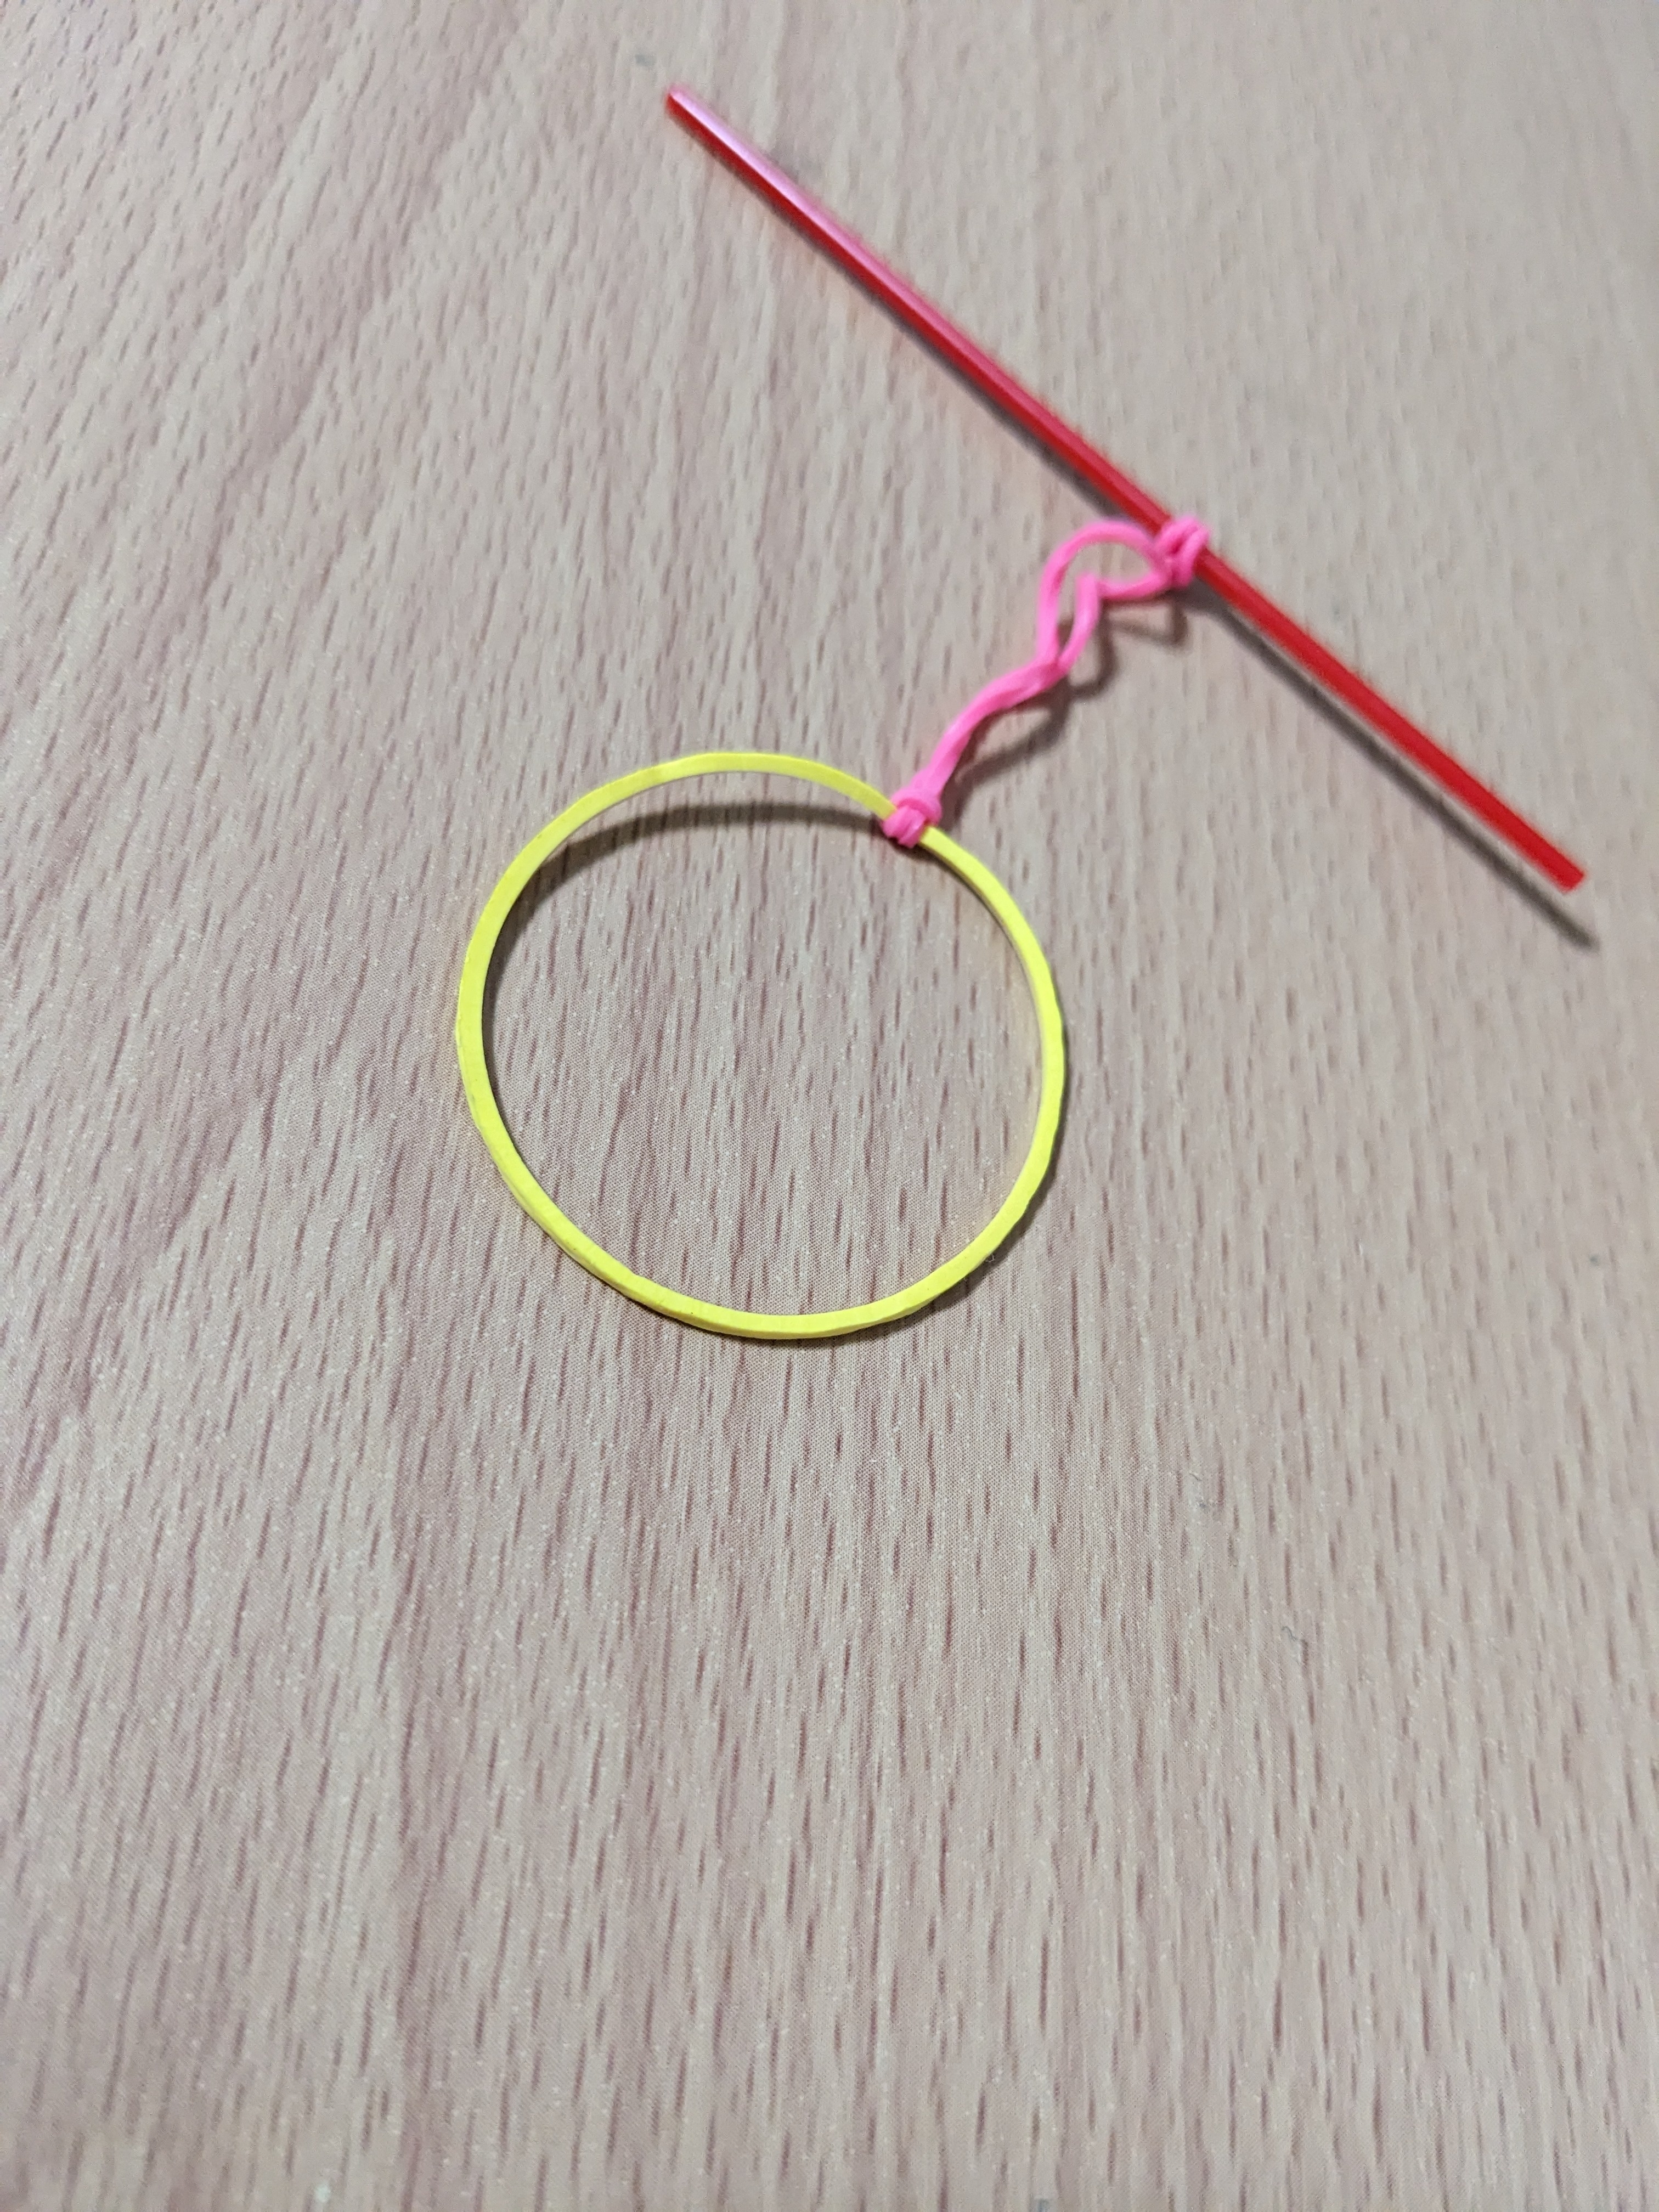 ピンクの結び目が付いた黄色い輪ゴムが木目調の表面に置かれている。